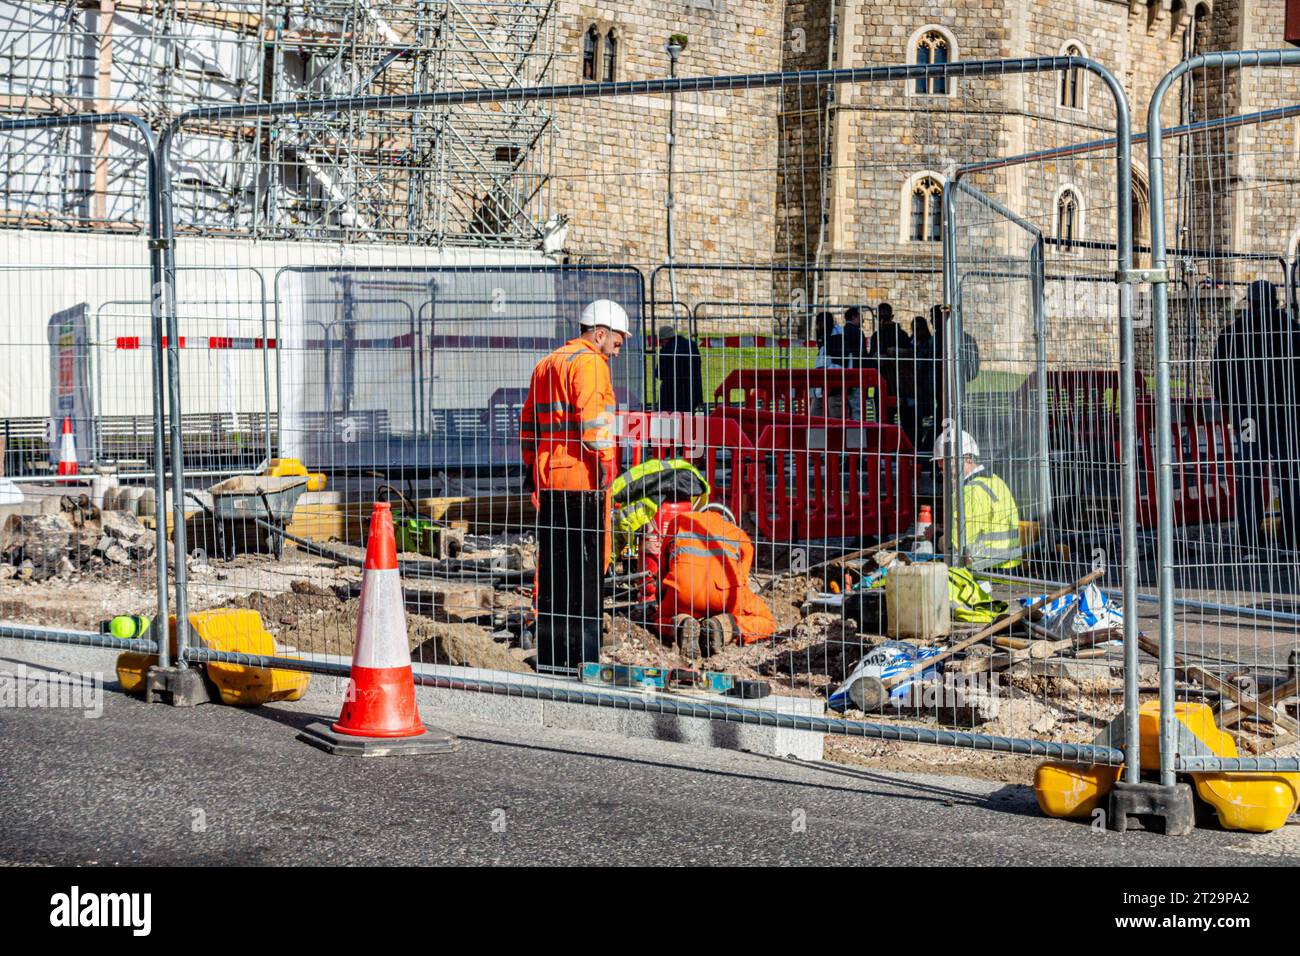 Lavori stradali all'esterno del Castello di Windsor intorno alla statua di bronzo della Regina Vittoria. L'area è recintata mentre gli operai scavano la strada. Foto Stock